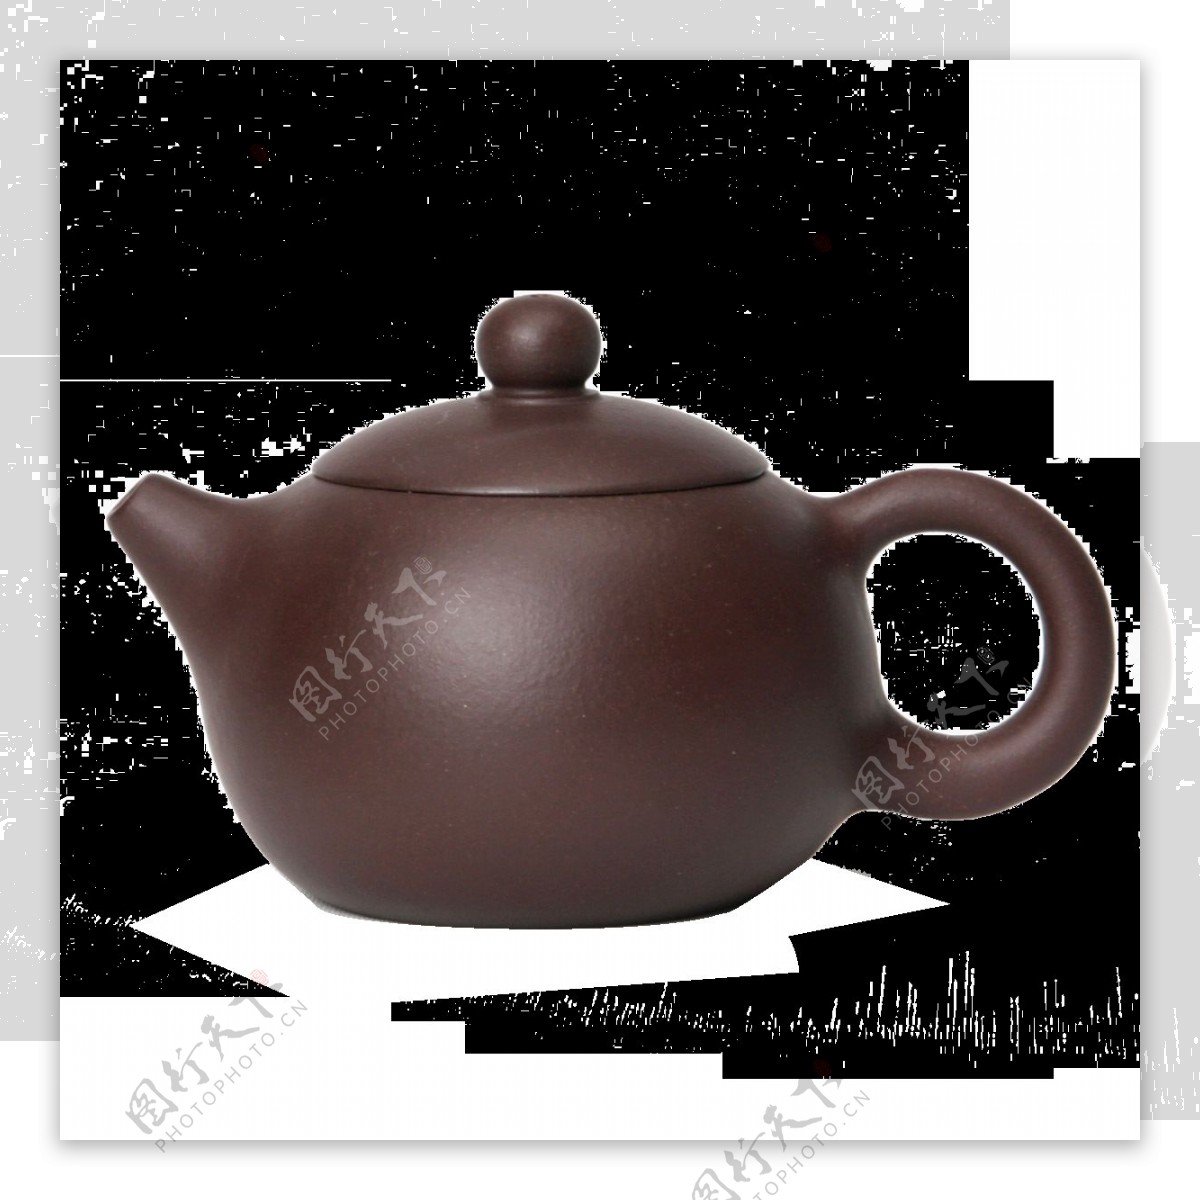 经典的谷雨茶茶壶和茶杯元素素材